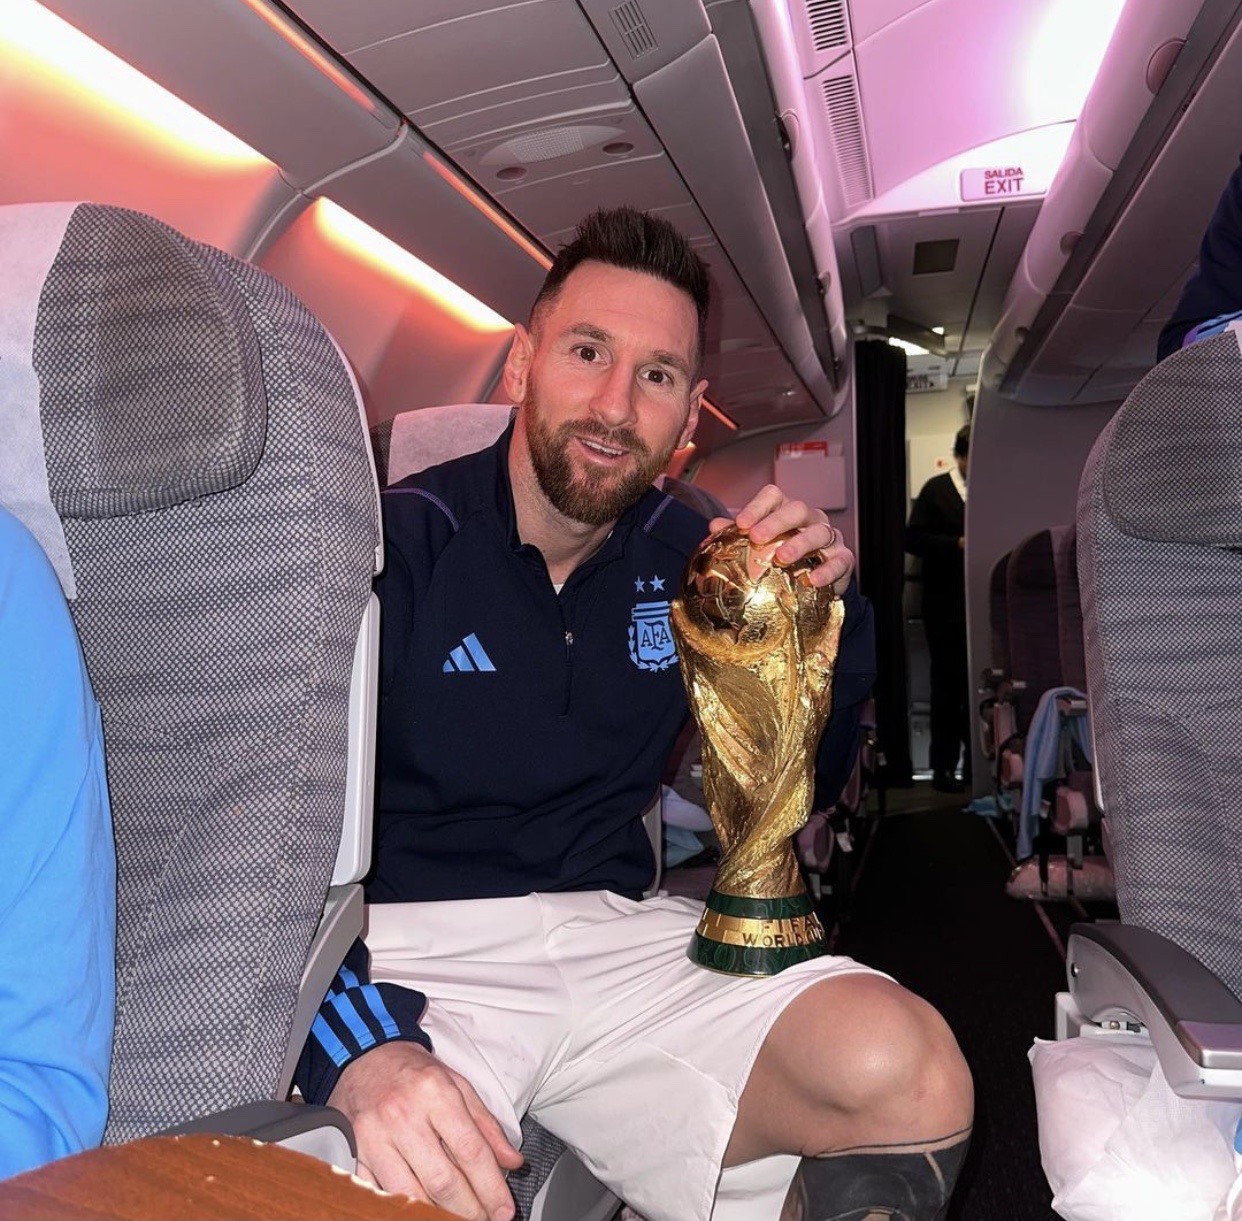 Biển người vây quanh sân, Messi vừa giành chiếc Cúp vô địch quốc gia trên đầu. Nếu bạn muốn thấy được những hình ảnh đầy cảm xúc như thế này, hãy xem bức ảnh này. Có lẽ đây là cảm giác mà Messi đã trải qua khi giành chiến thắng đầy tự hào. Hãy cảm nhận giá trị của niềm đam mê và mộng mơ.